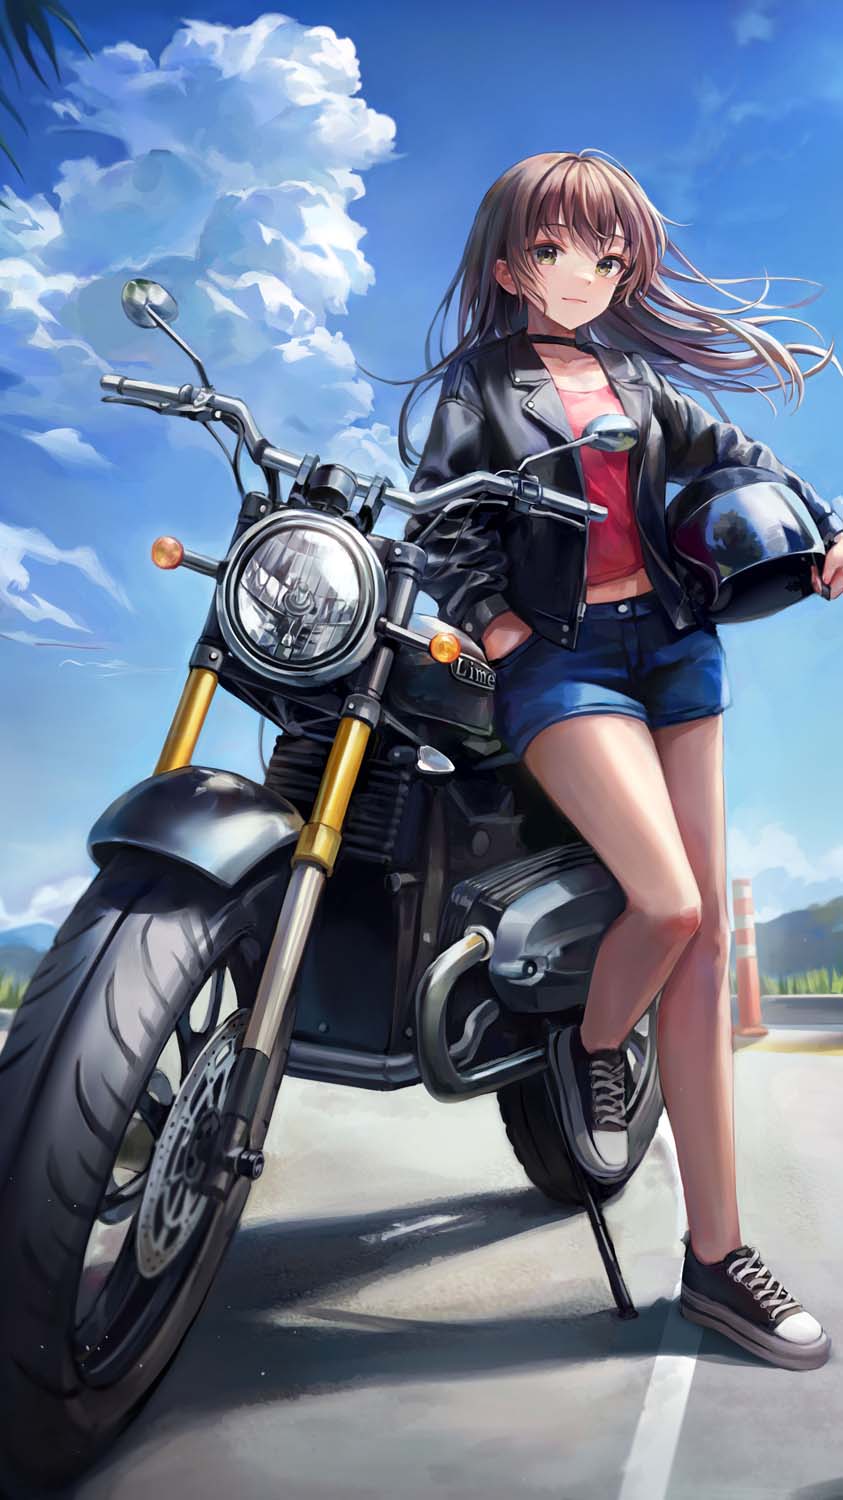 Yamaha Motor Presents “Master of Torque” — An Original Short Anime Series |  Diverse Japan